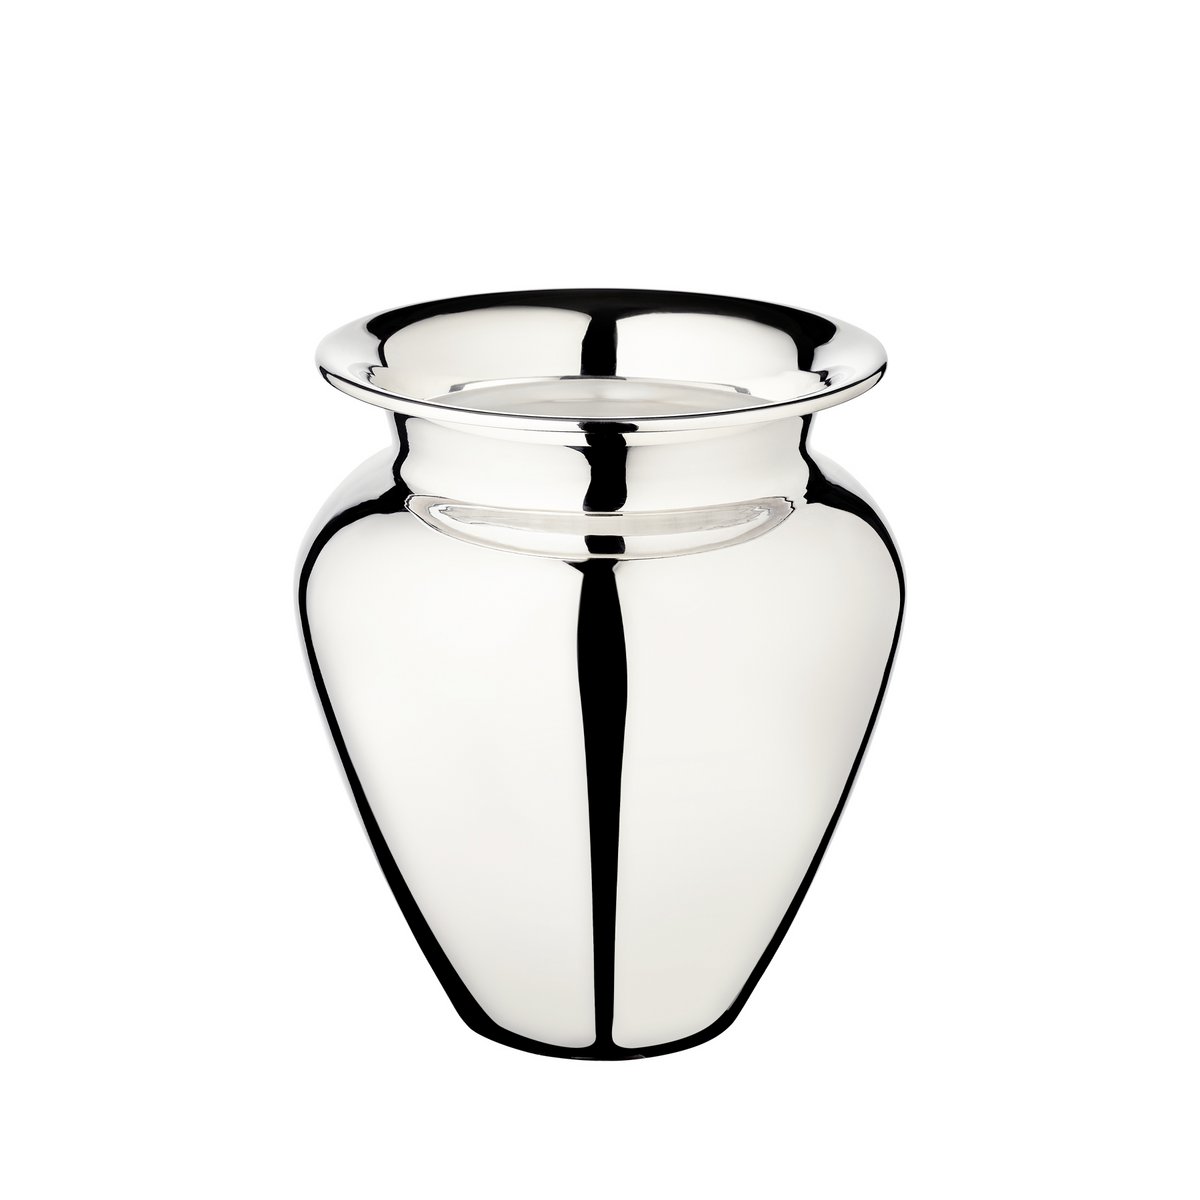 EDZARD Vase Antonia, schwerversilbert, Höhe 21 cm, Durchmesser 18 cm, Öffnung Durchmesser 12 cm